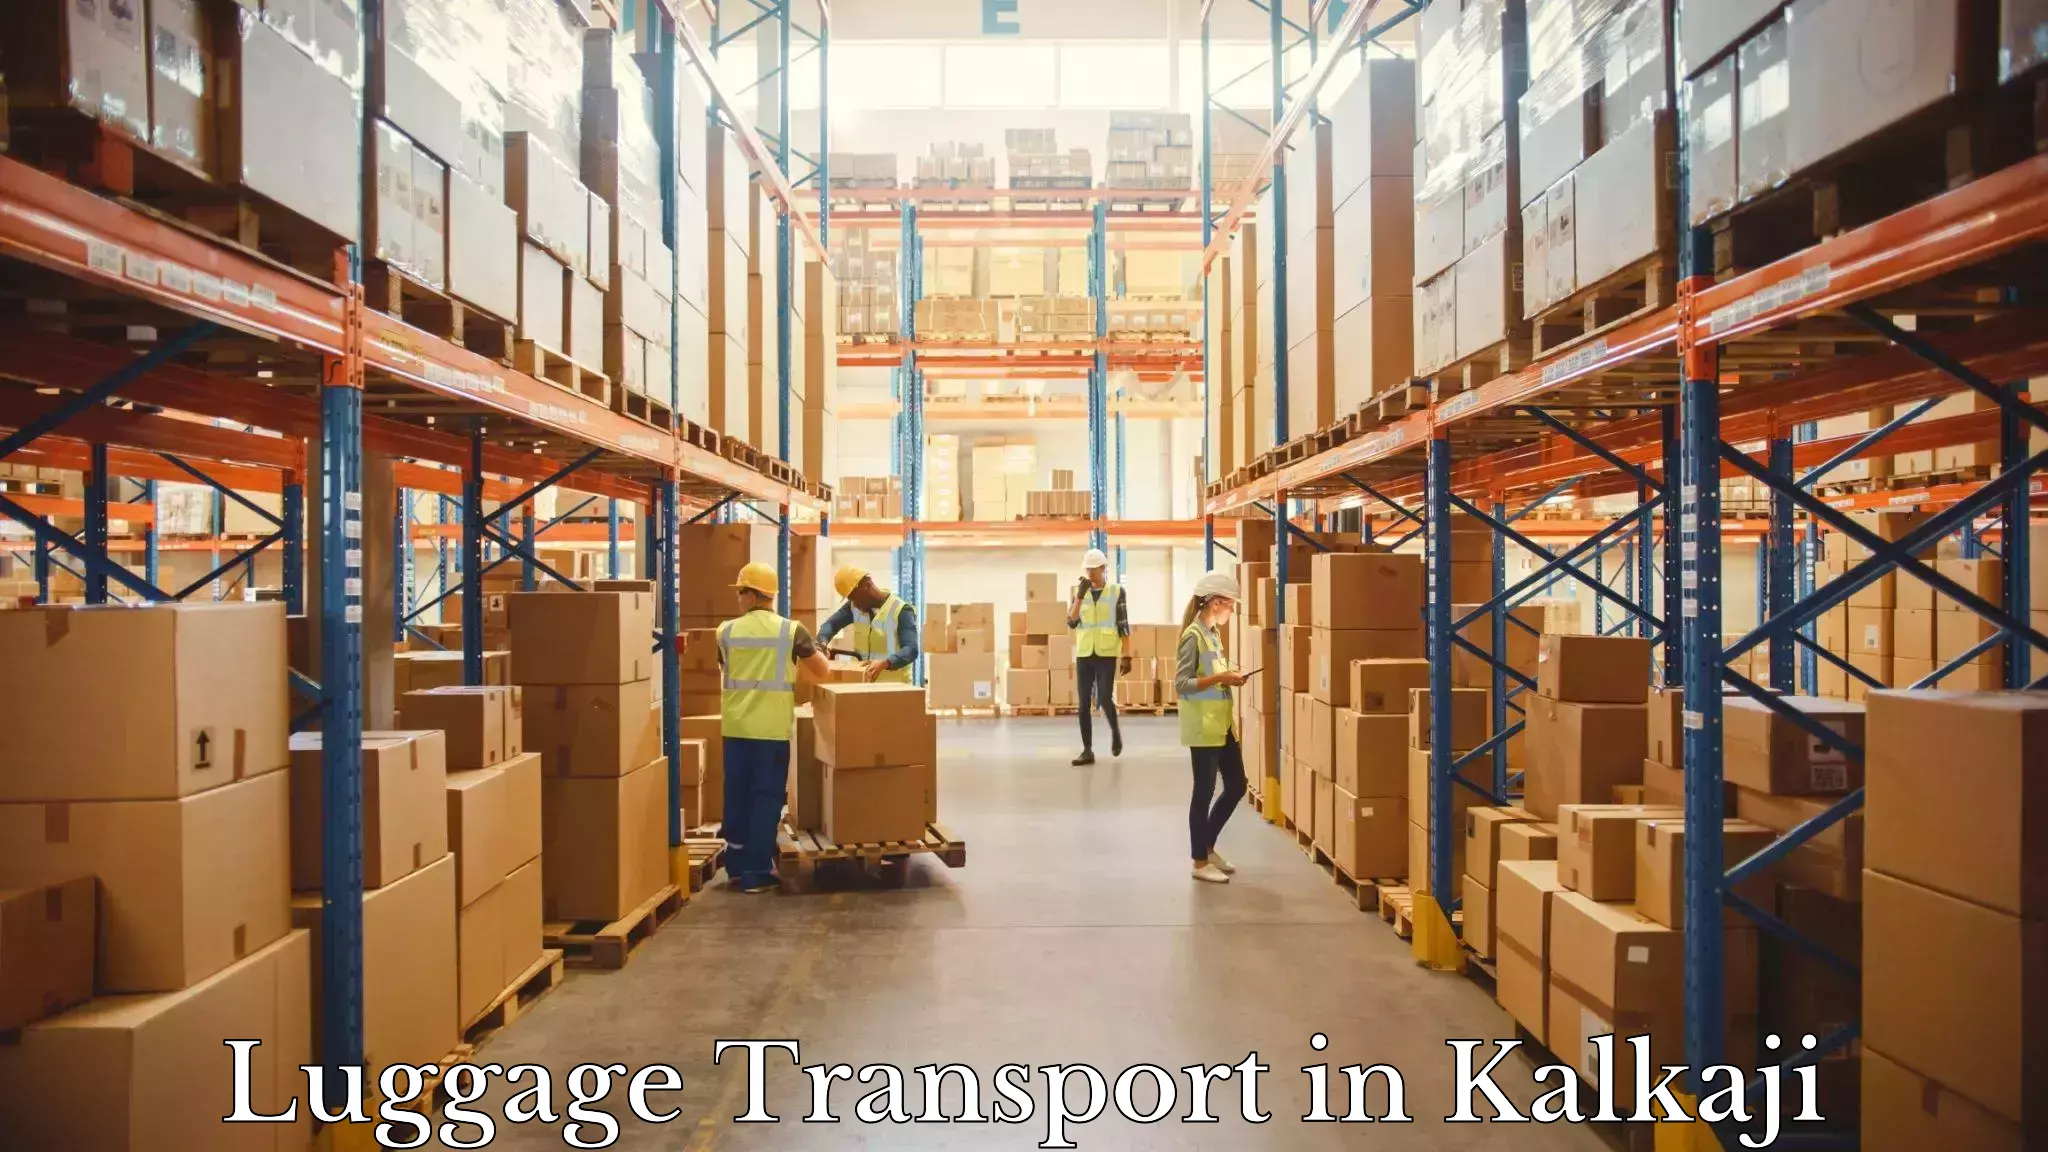 Baggage transport network in Kalkaji